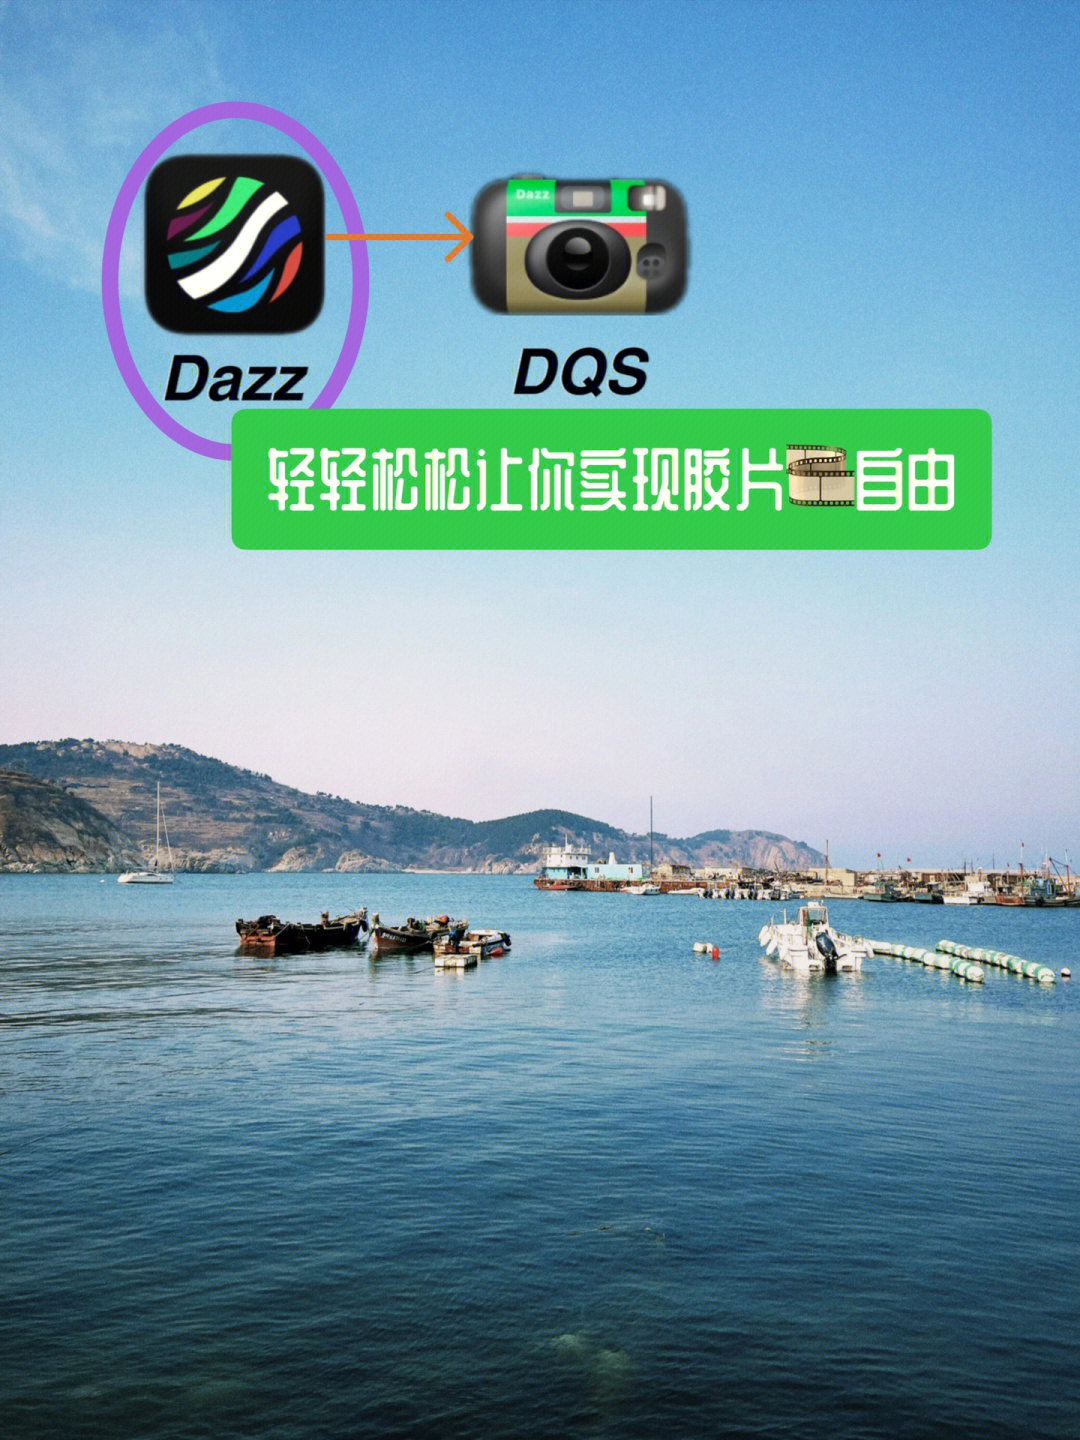 dazz cam相机图片